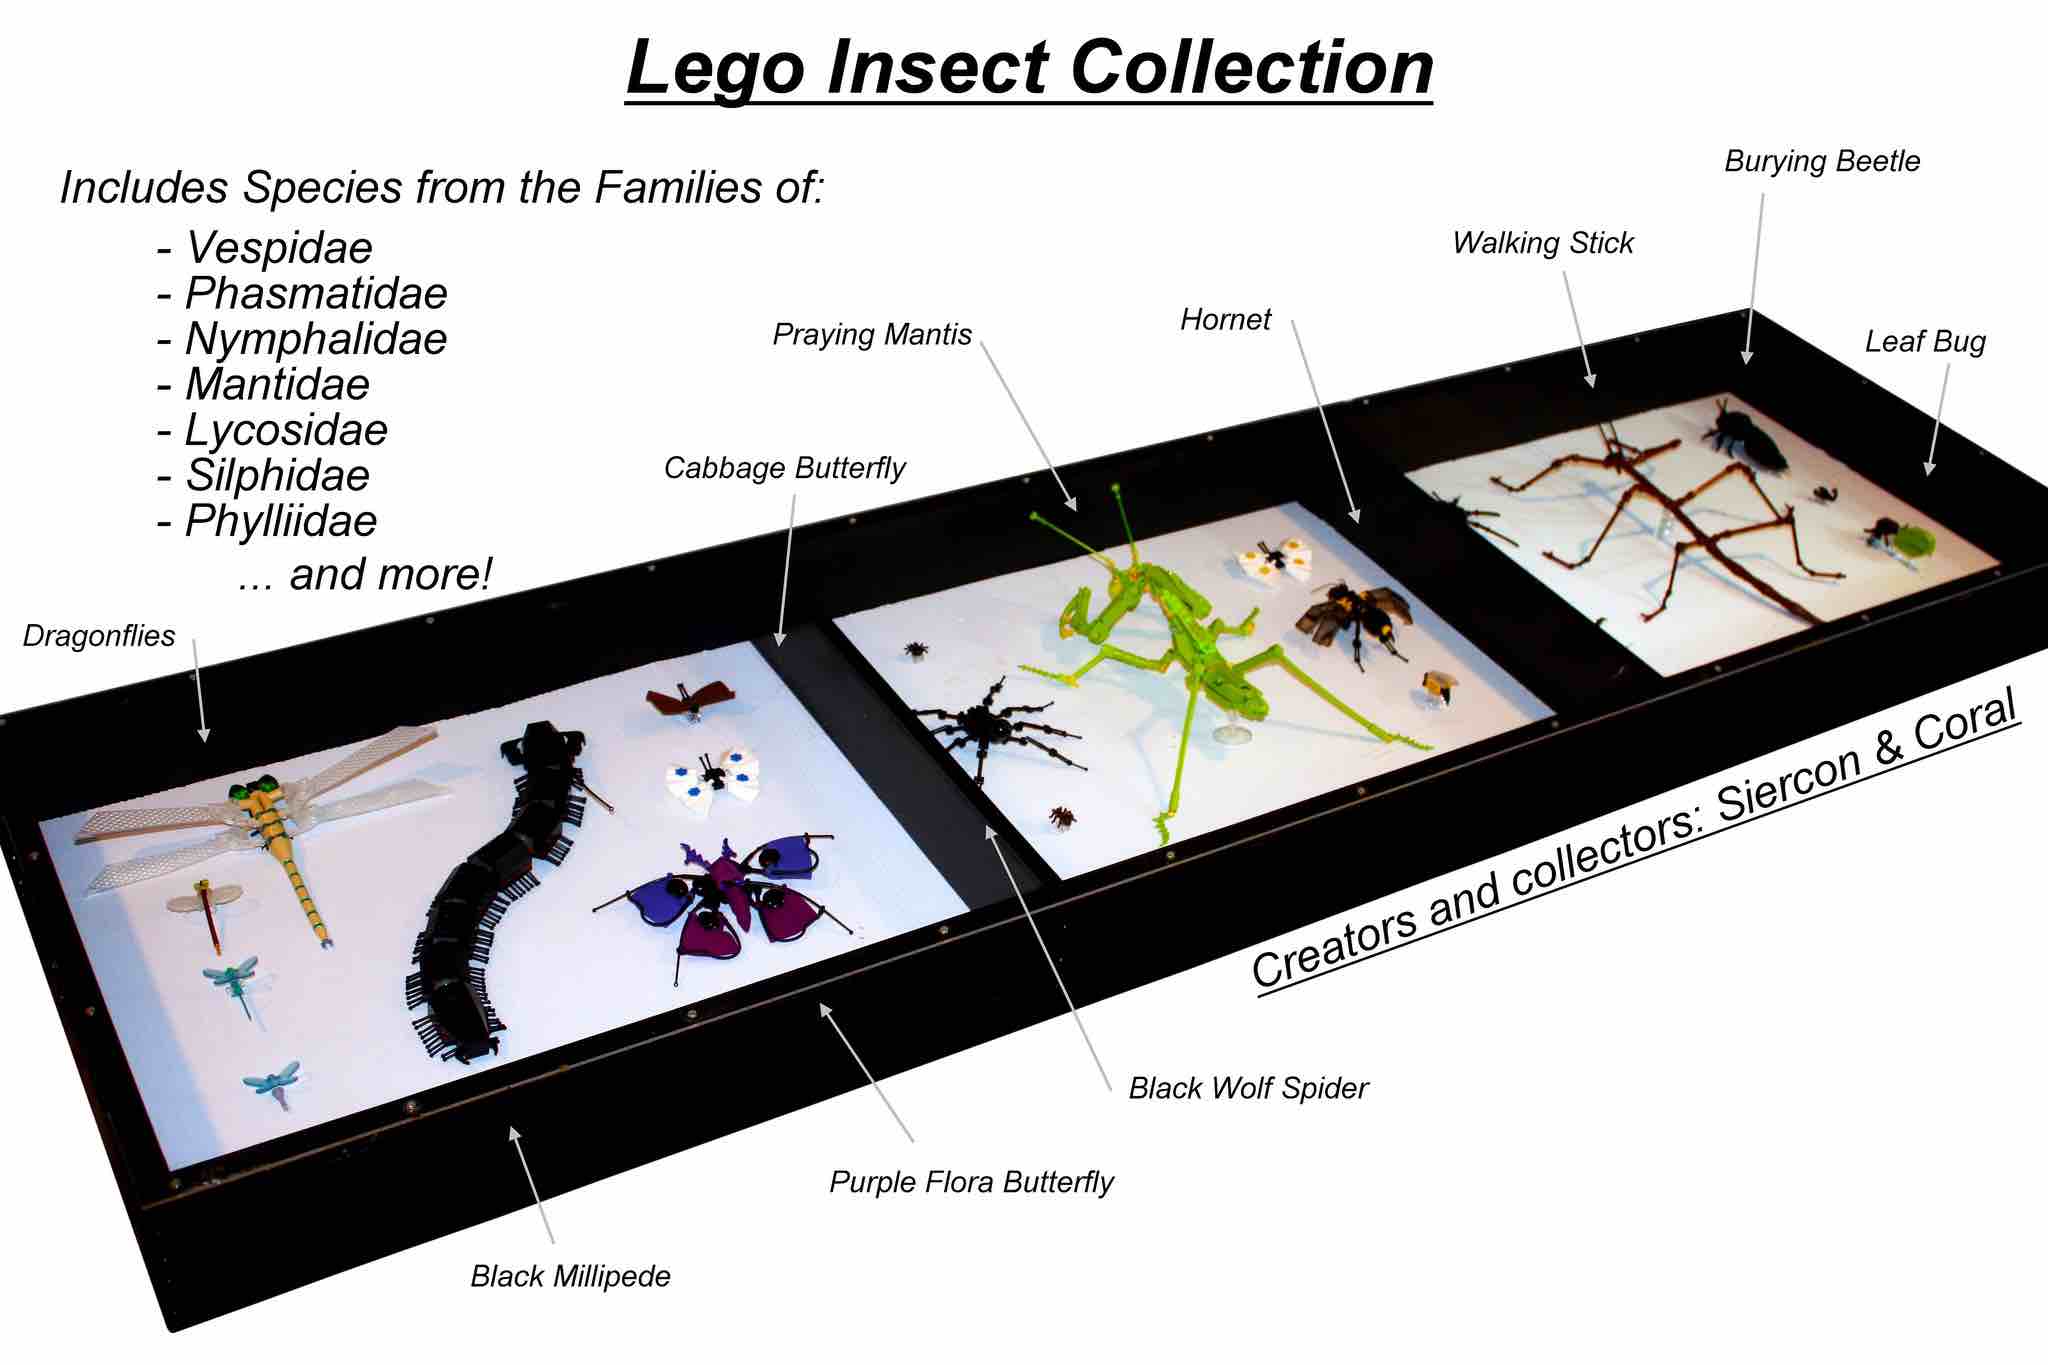 O Que Apaixonados por Entomologia fazem com Lego